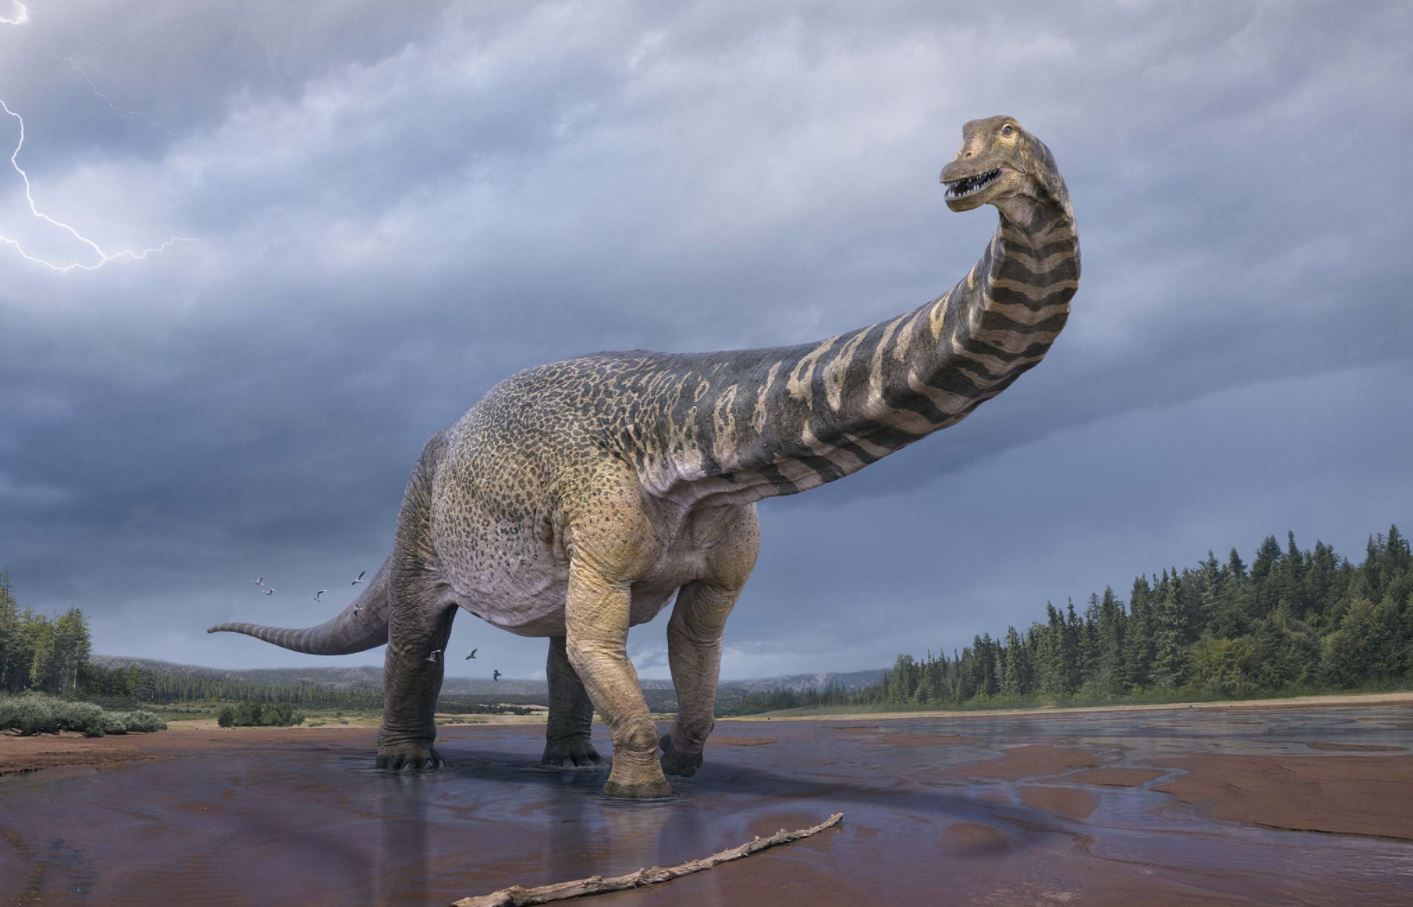 Bilim insanları, Avustralya'da dünyanın en büyük dinozorlarından biri olan yeni bir dinozor türünün keşfini doğruladılar.